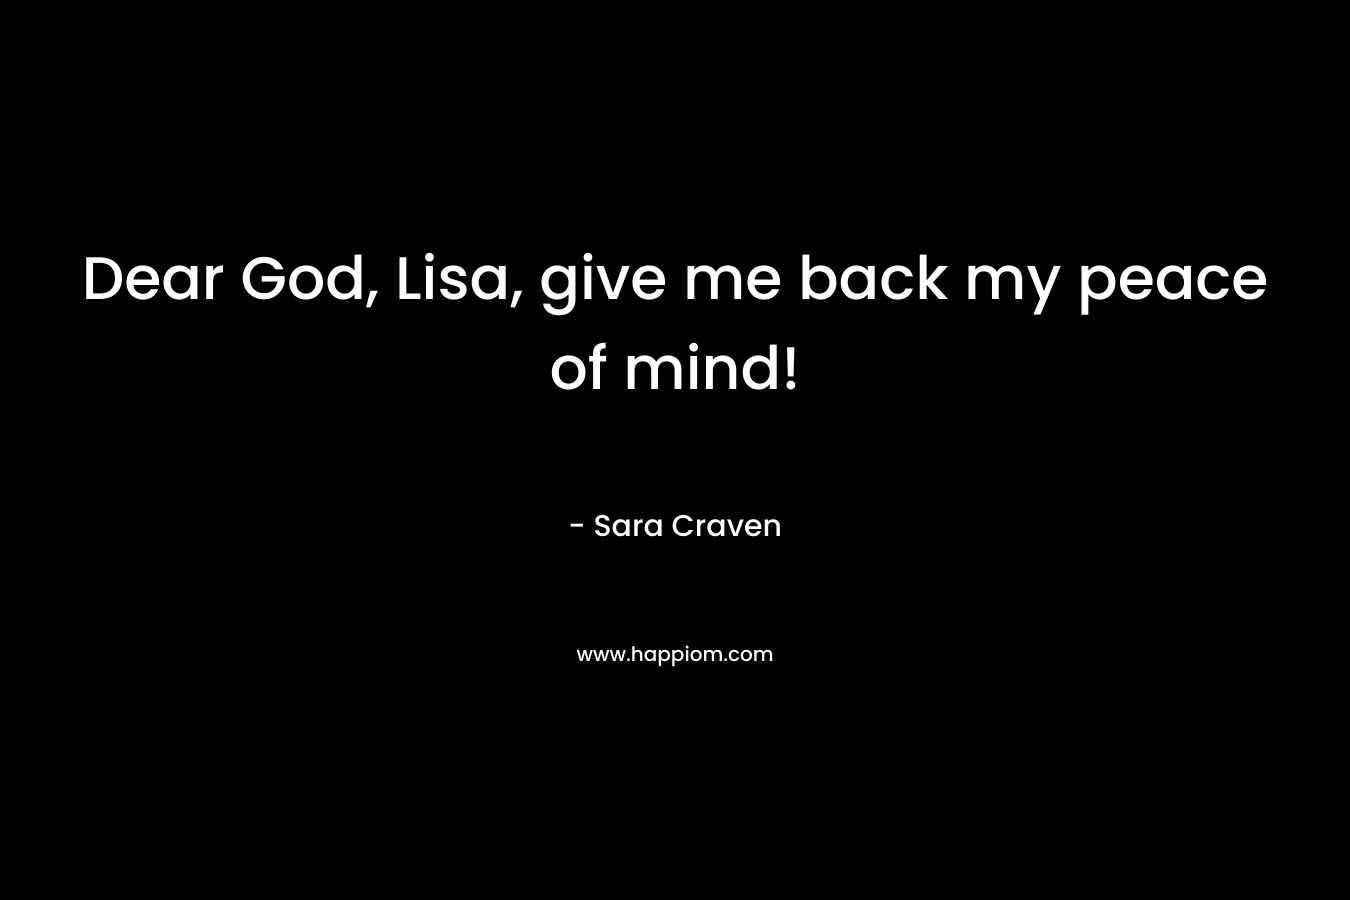 Dear God, Lisa, give me back my peace of mind!